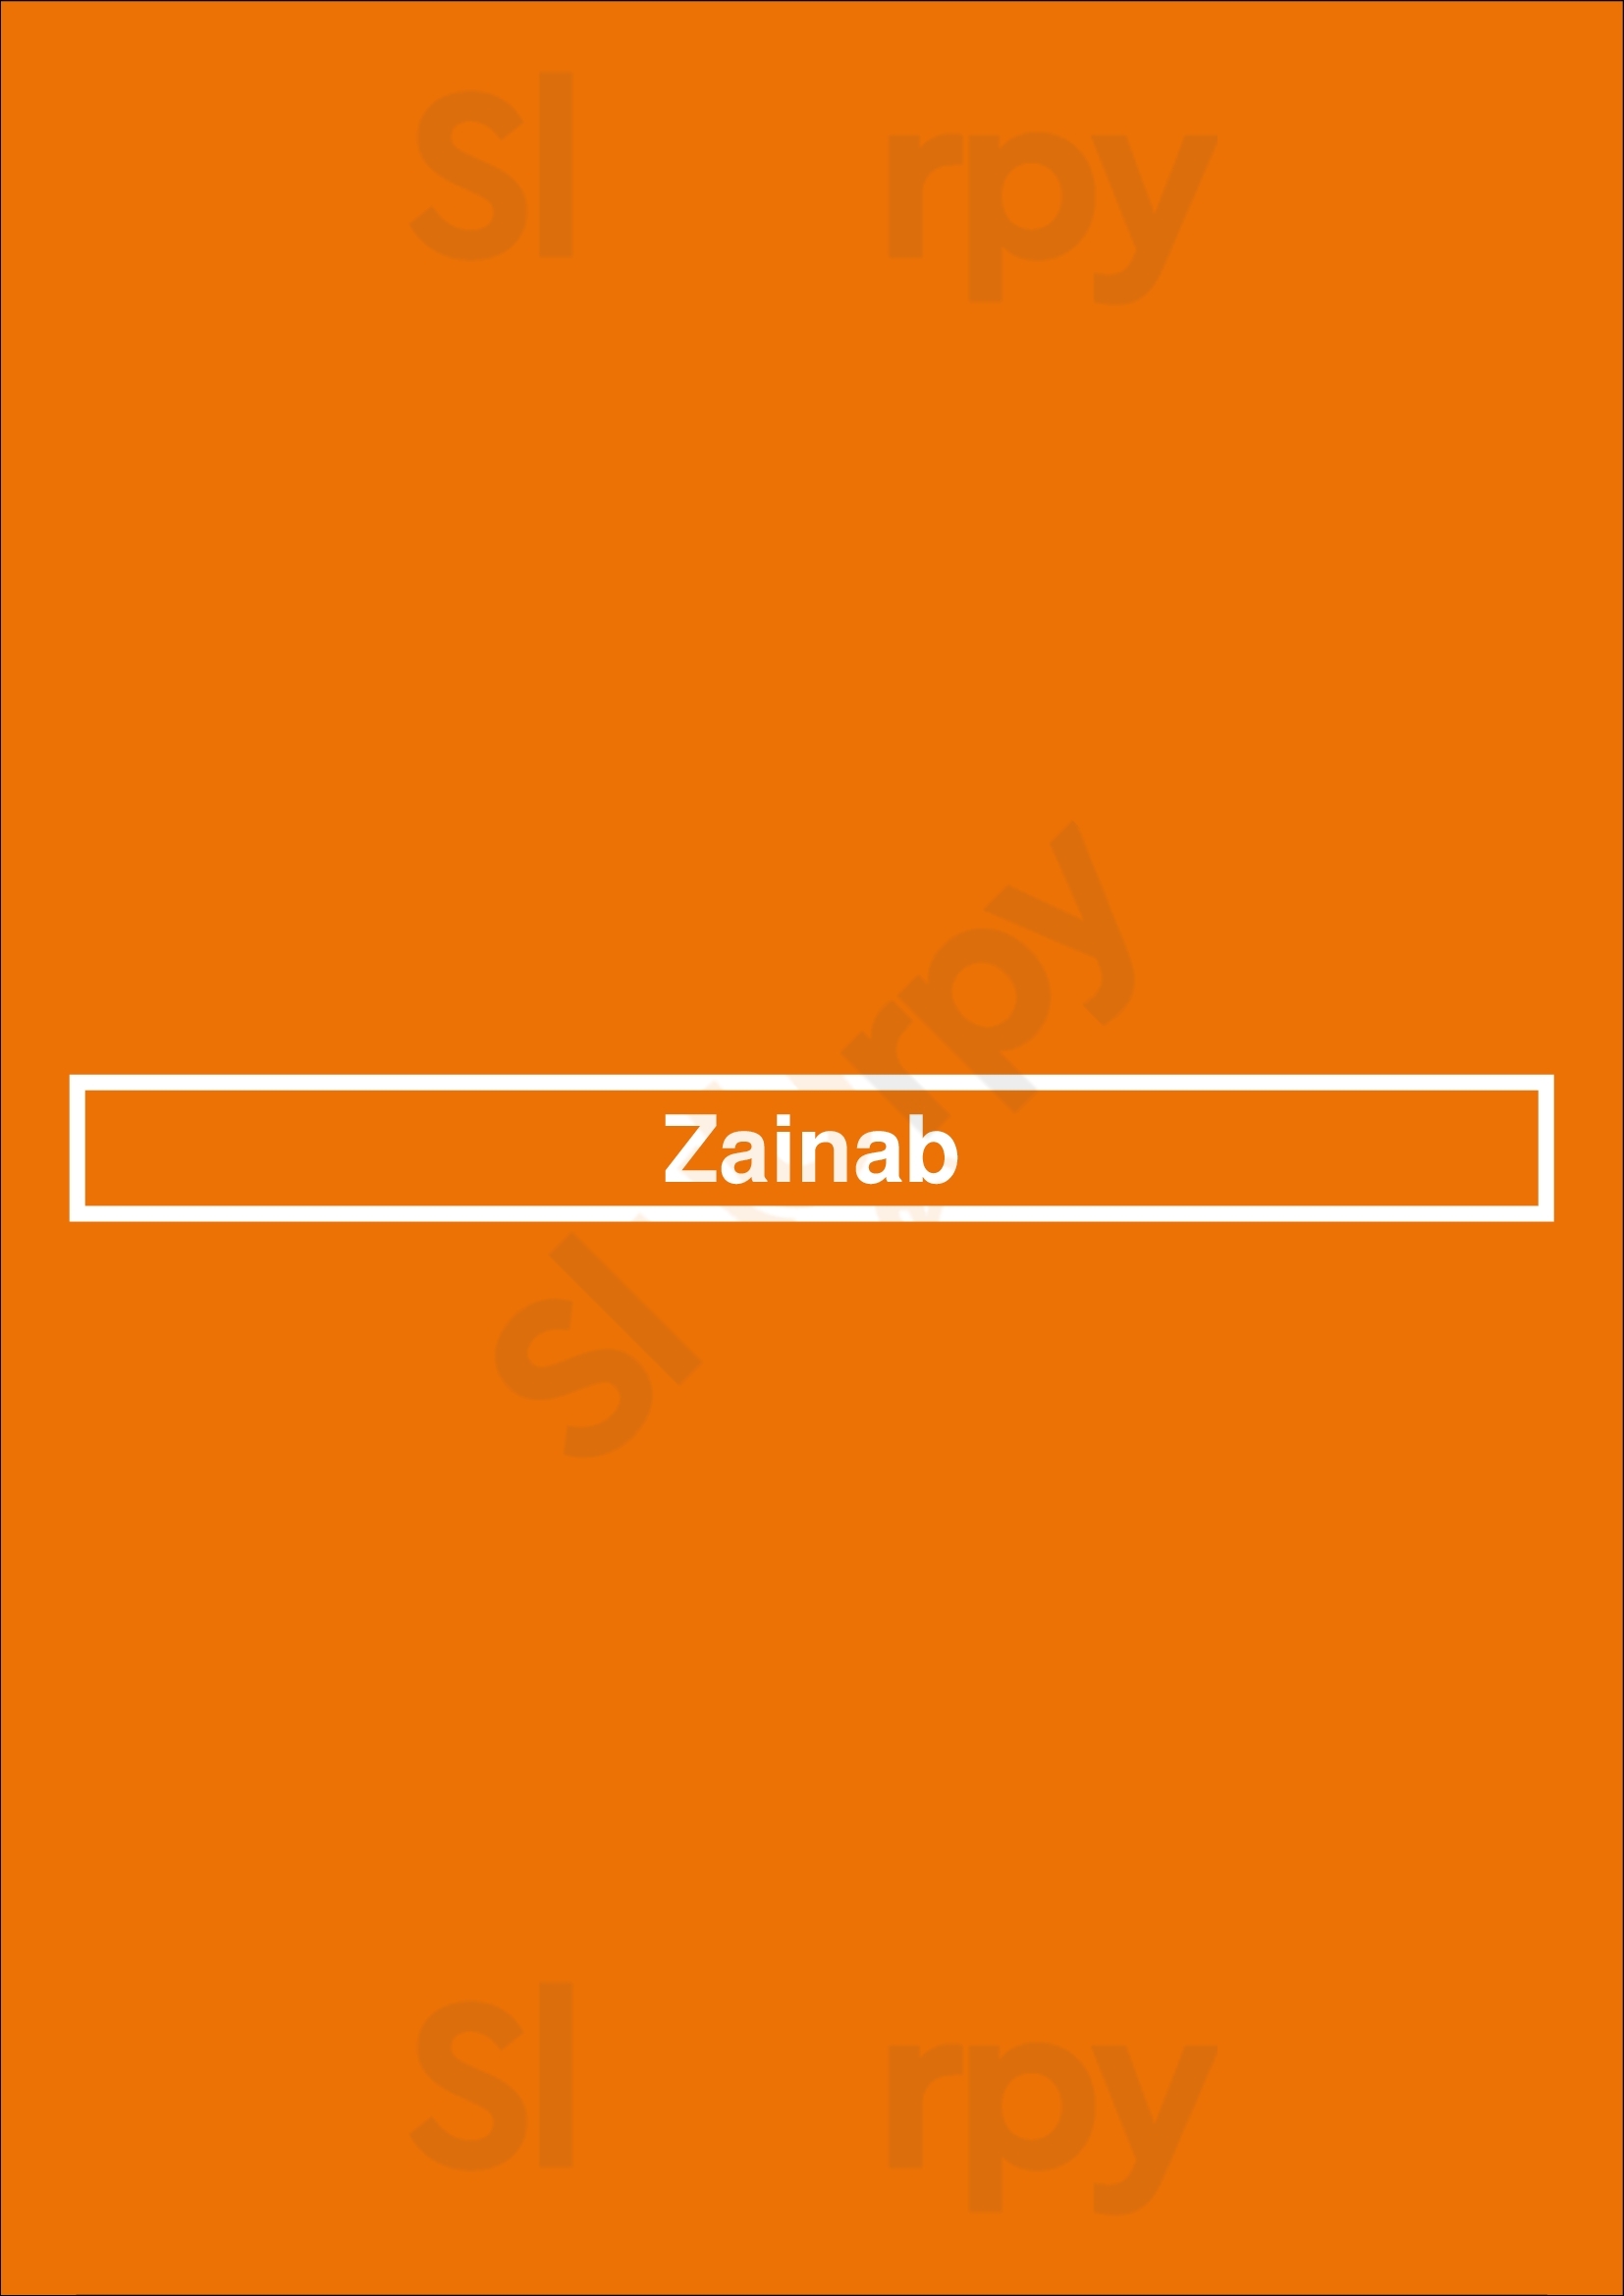 Zainab' Kitchen London Menu - 1